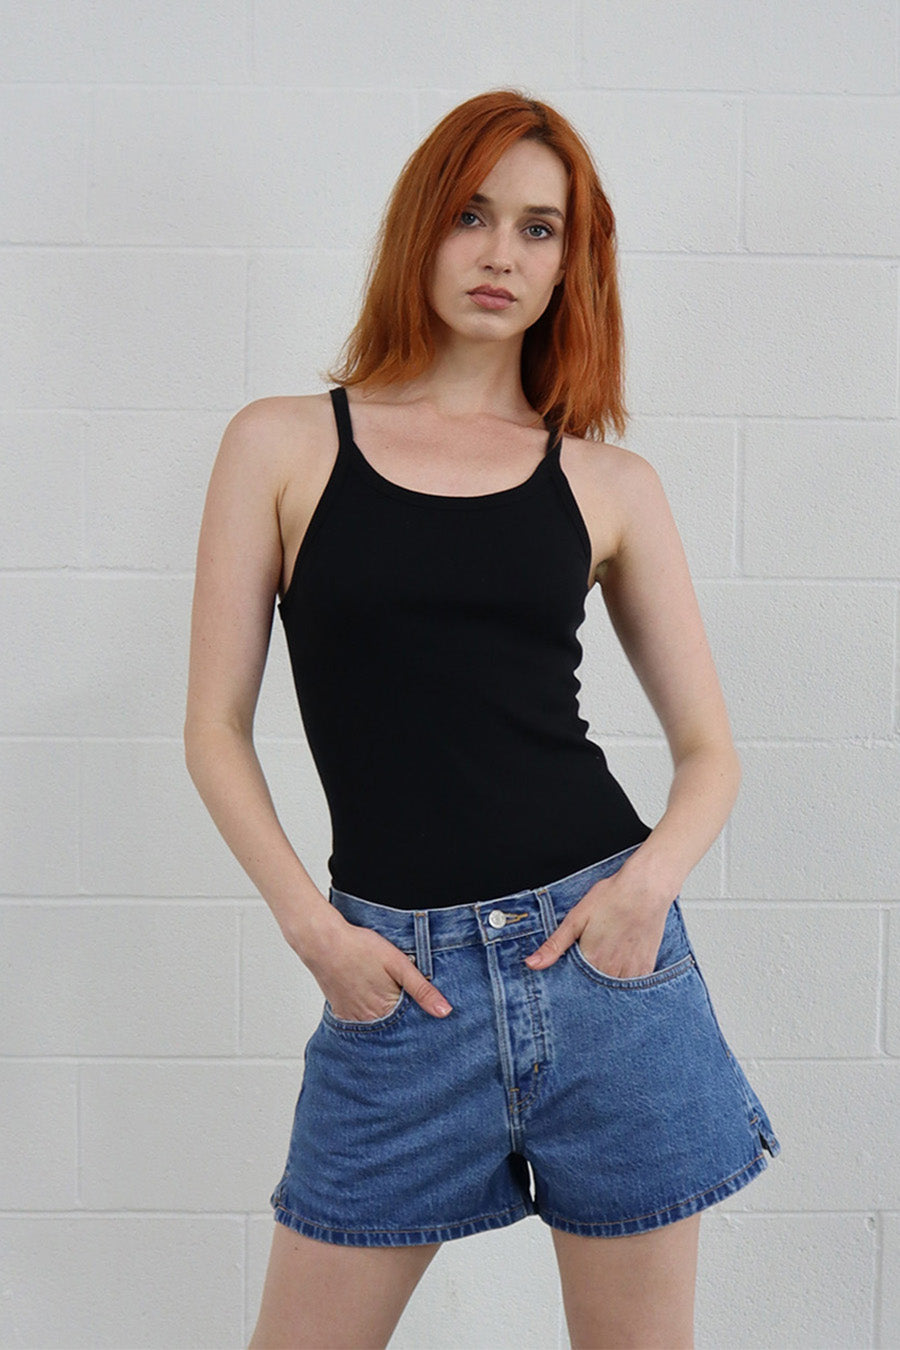 Fashion Nova women blue denim shorts US size 5 (very small) Brand New | eBay